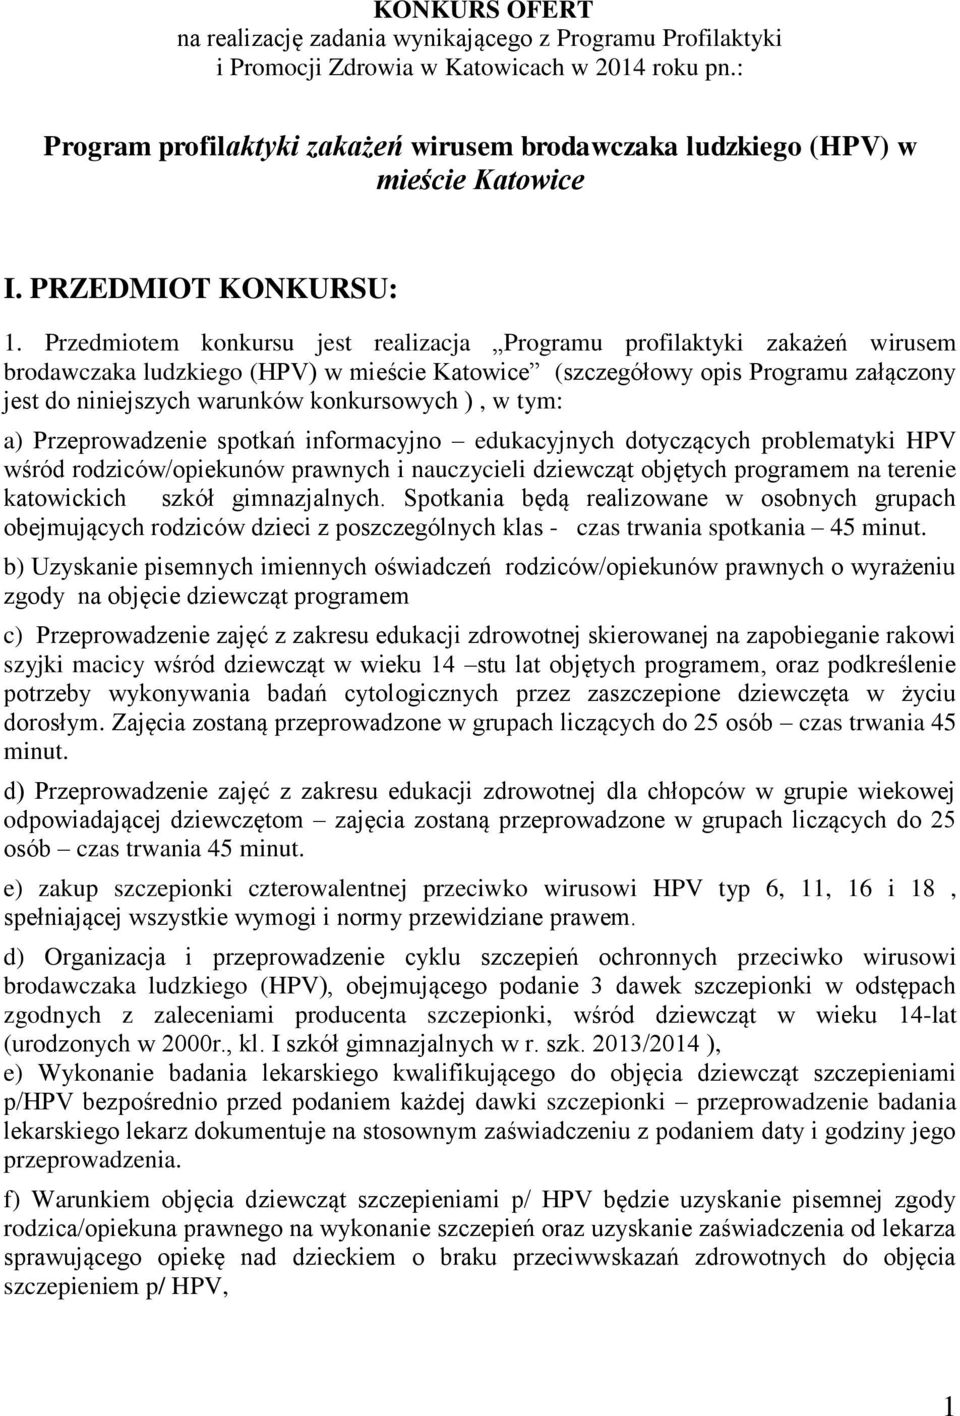 Przedmiotem konkursu jest realizacja Programu profilaktyki zakażeń wirusem brodawczaka ludzkiego (HPV) w mieście Katowice (szczegółowy opis Programu załączony jest do niniejszych warunków